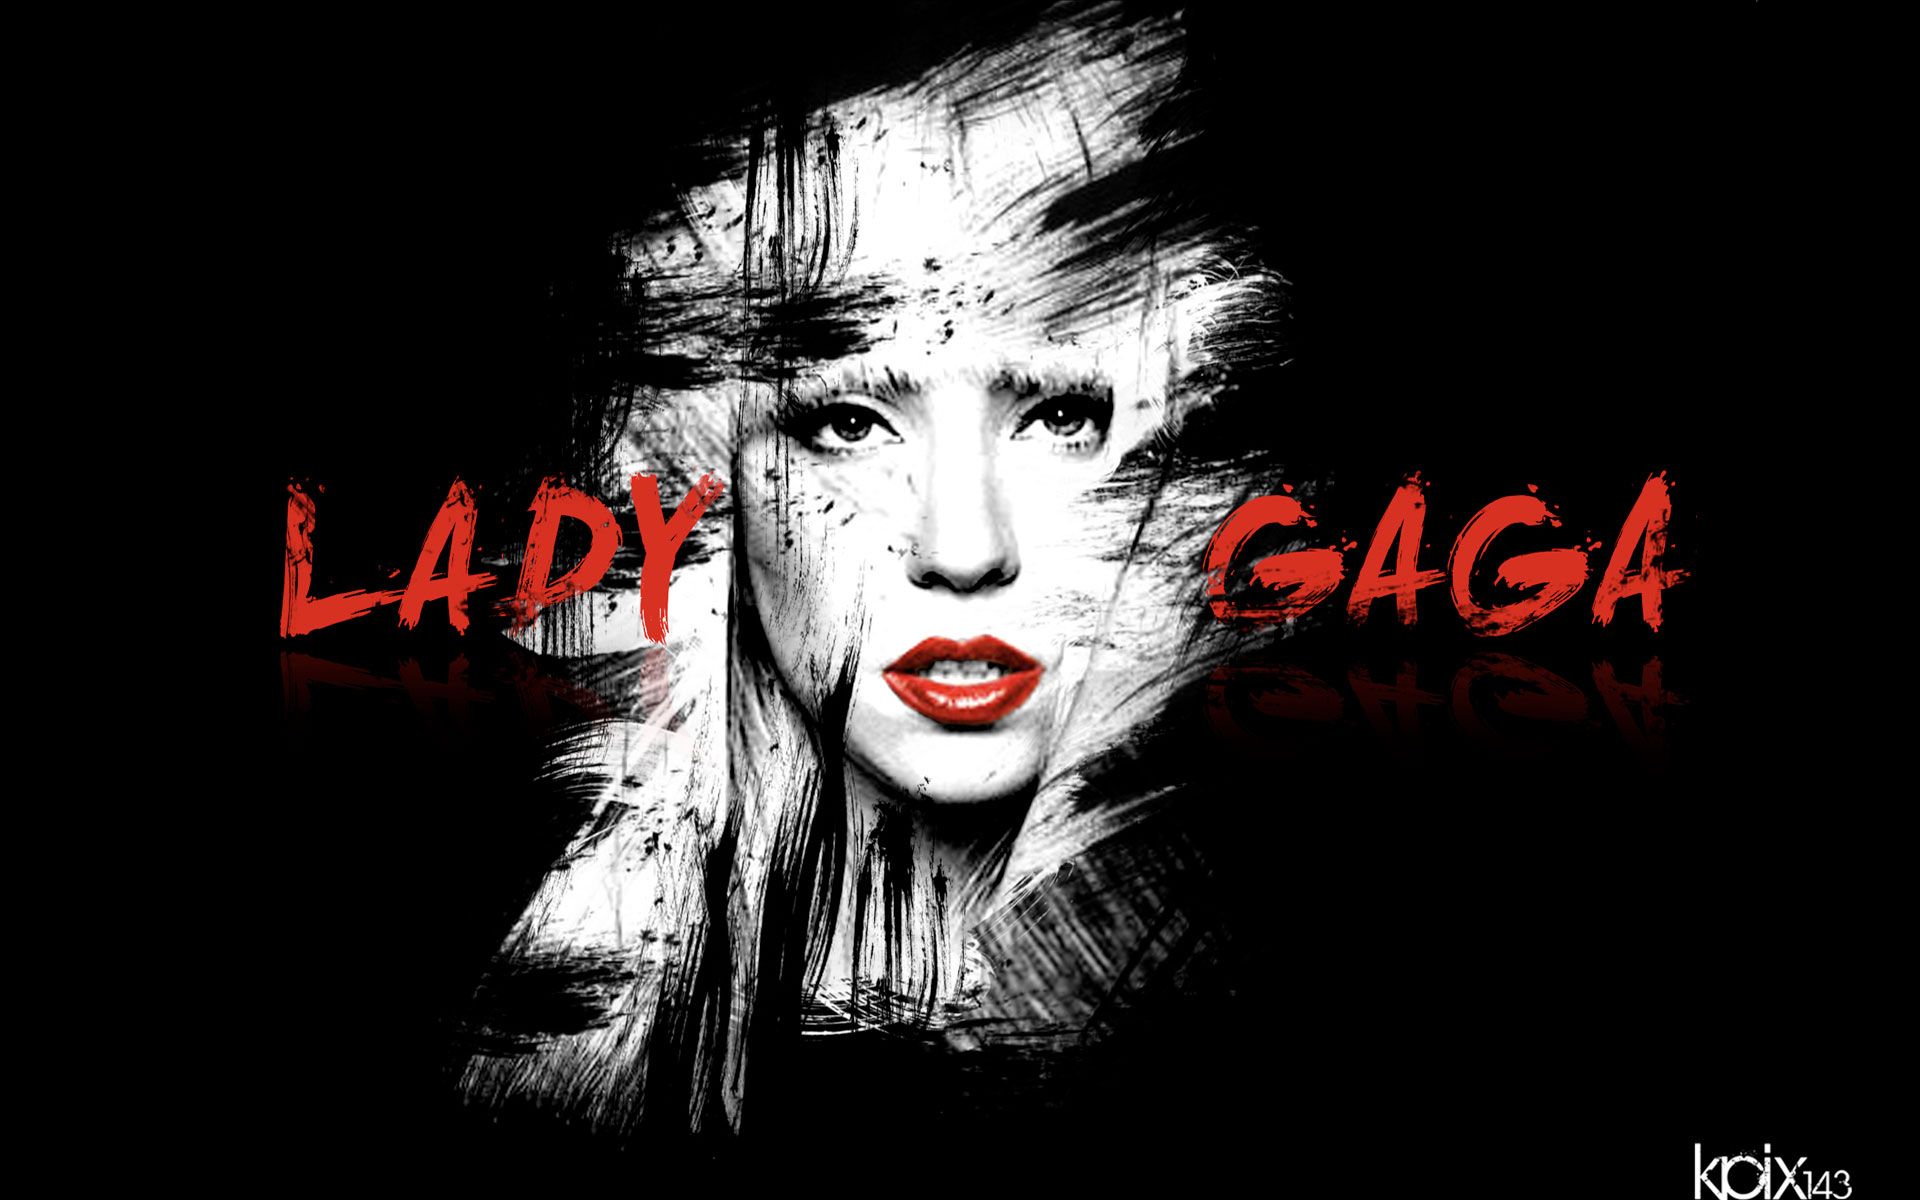 Lady Gaga Wallpapers - hd wallpapers n